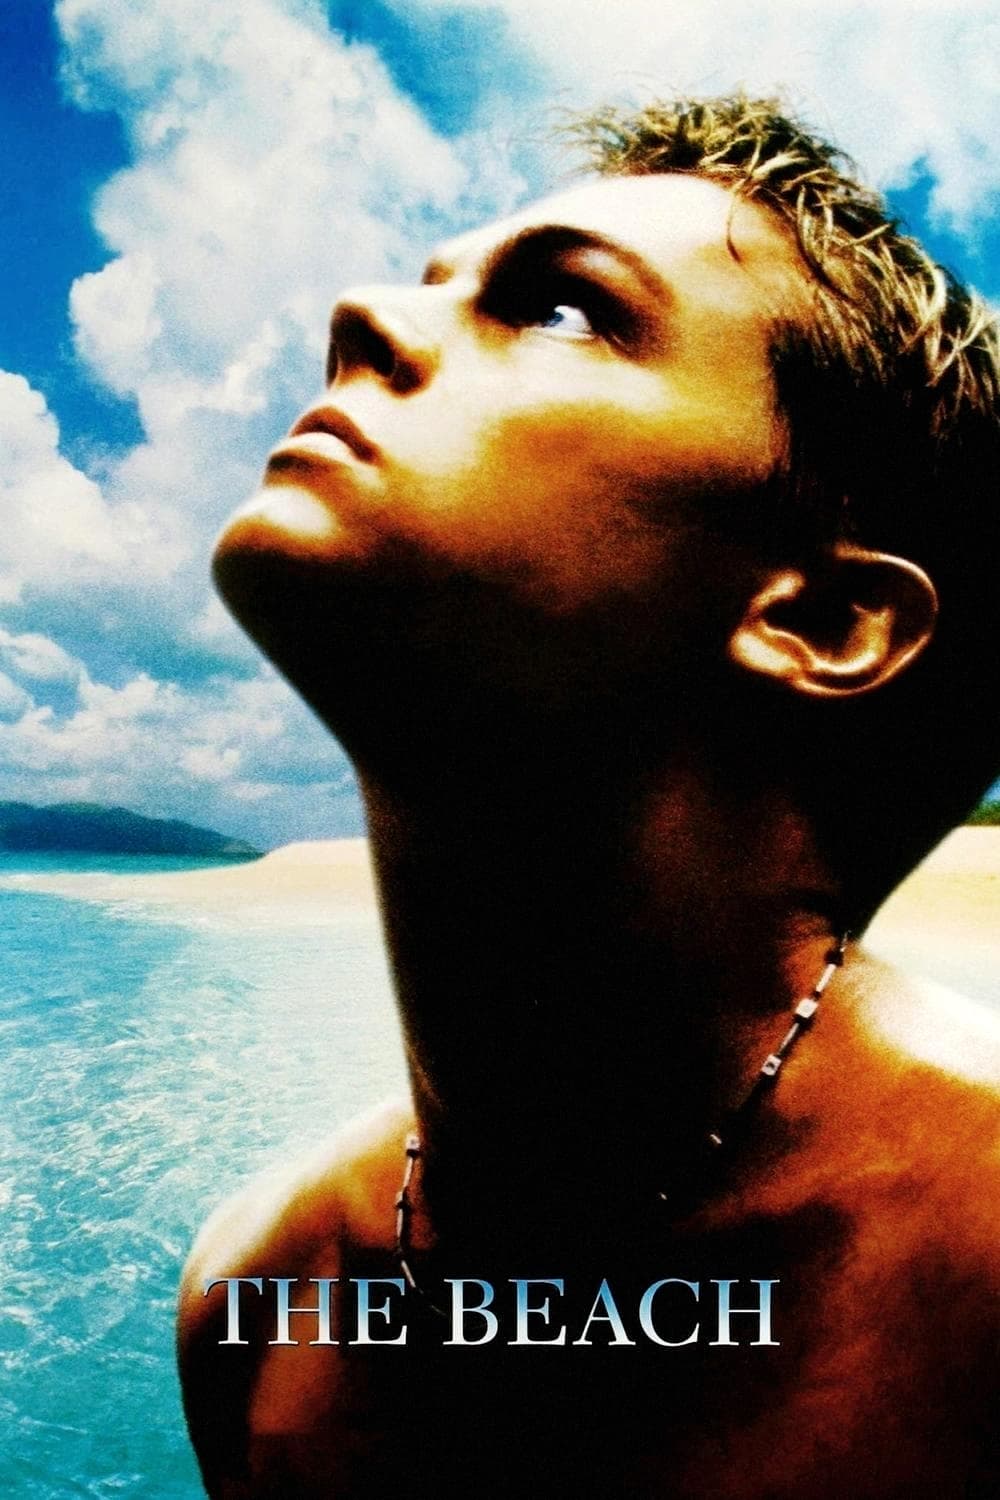 The Beach (I) (2000)